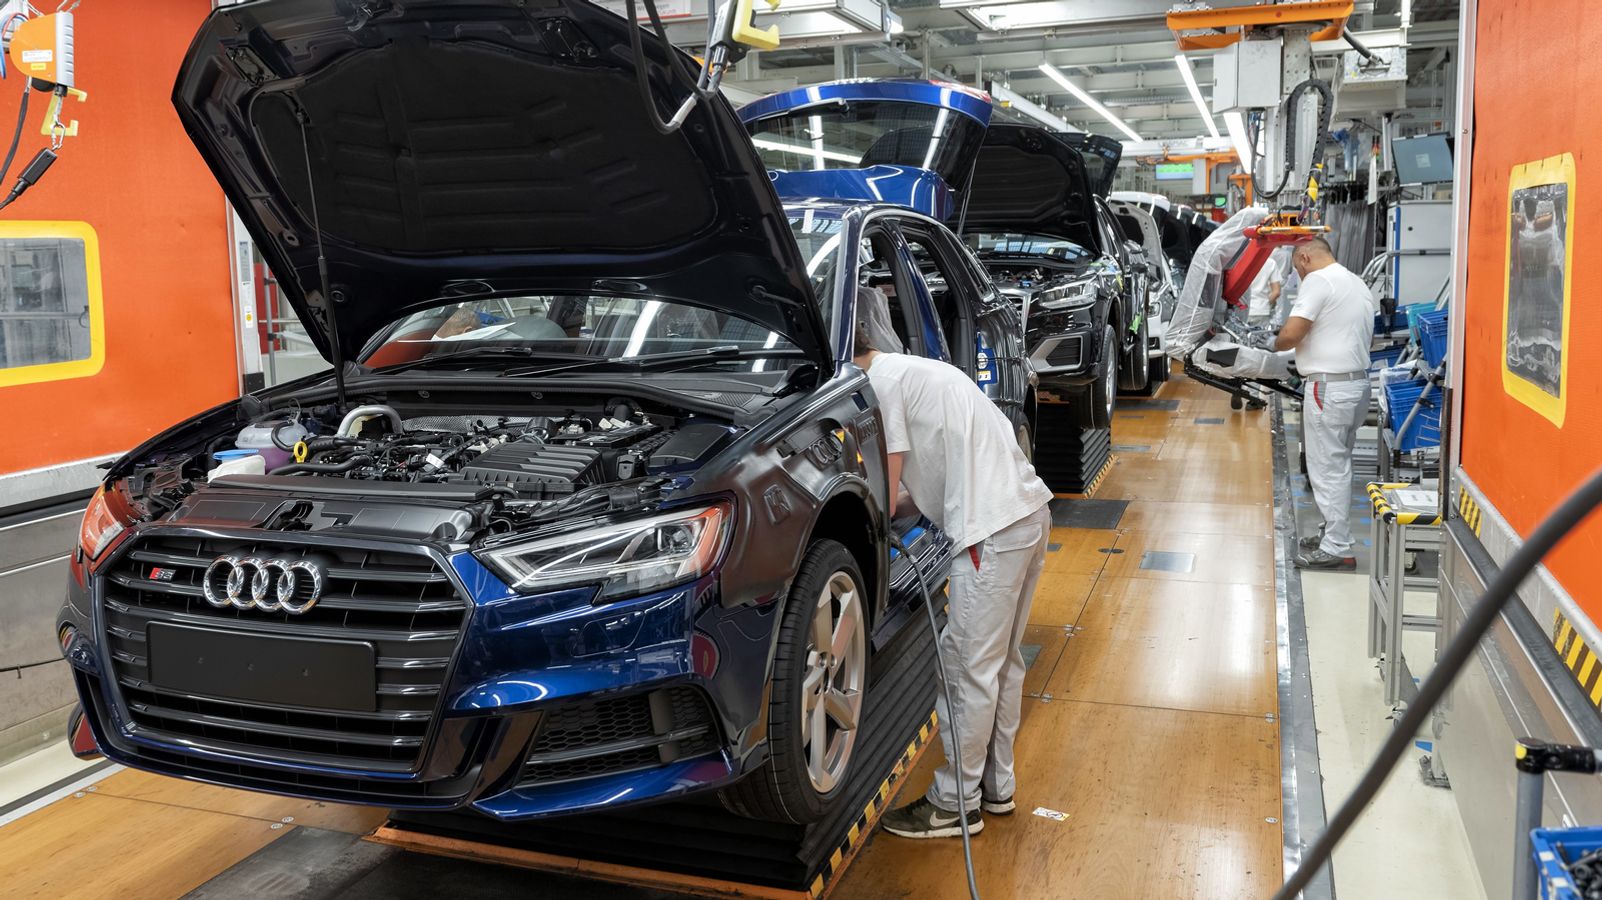 Audi: Trotz schwacher Auslastung kein weiterer Stellenabbau